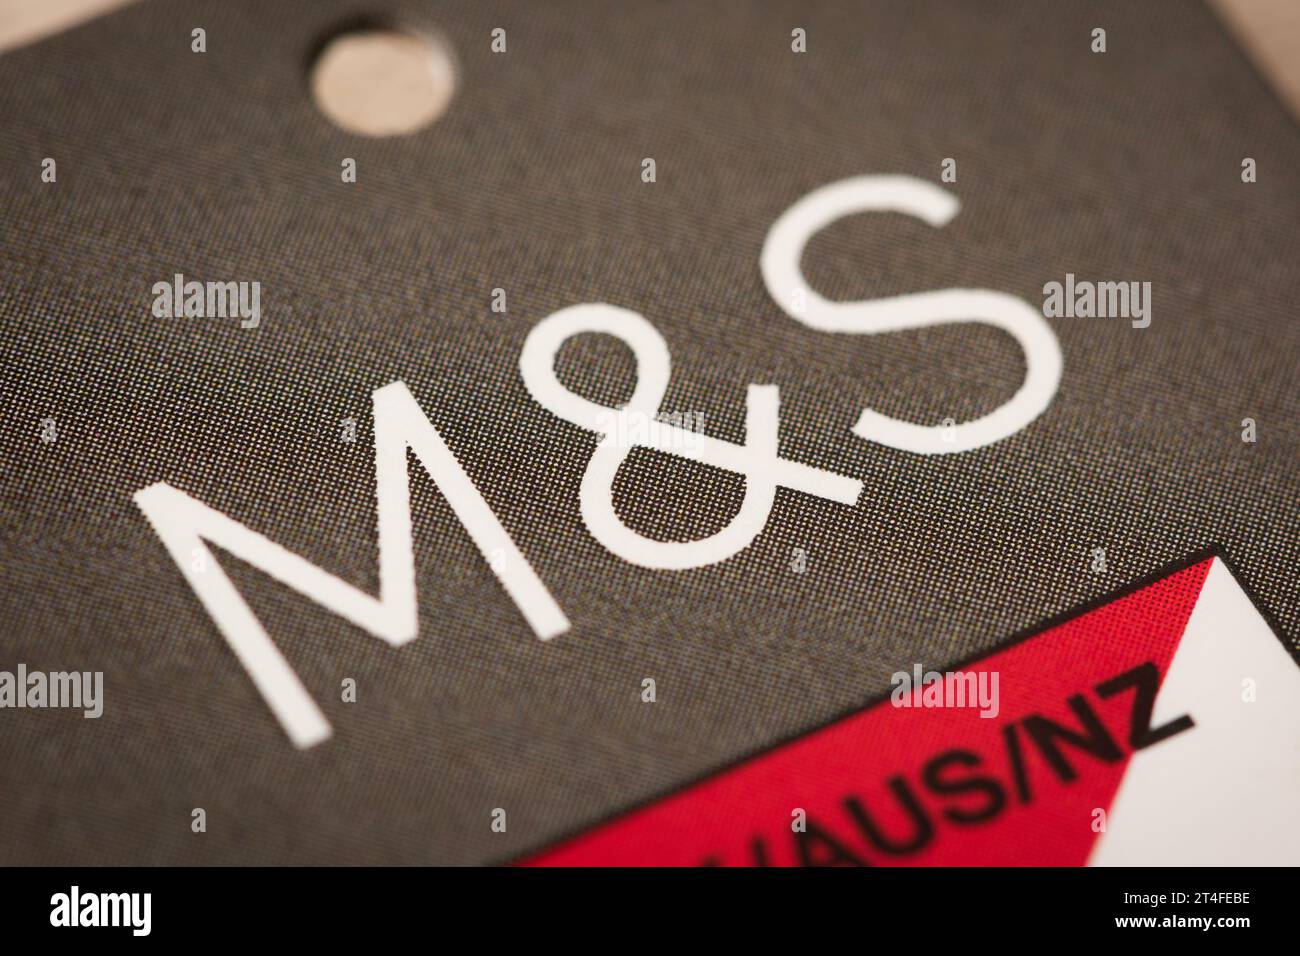 A close-up of the M&S logo as seen on a tag. Stock Photo